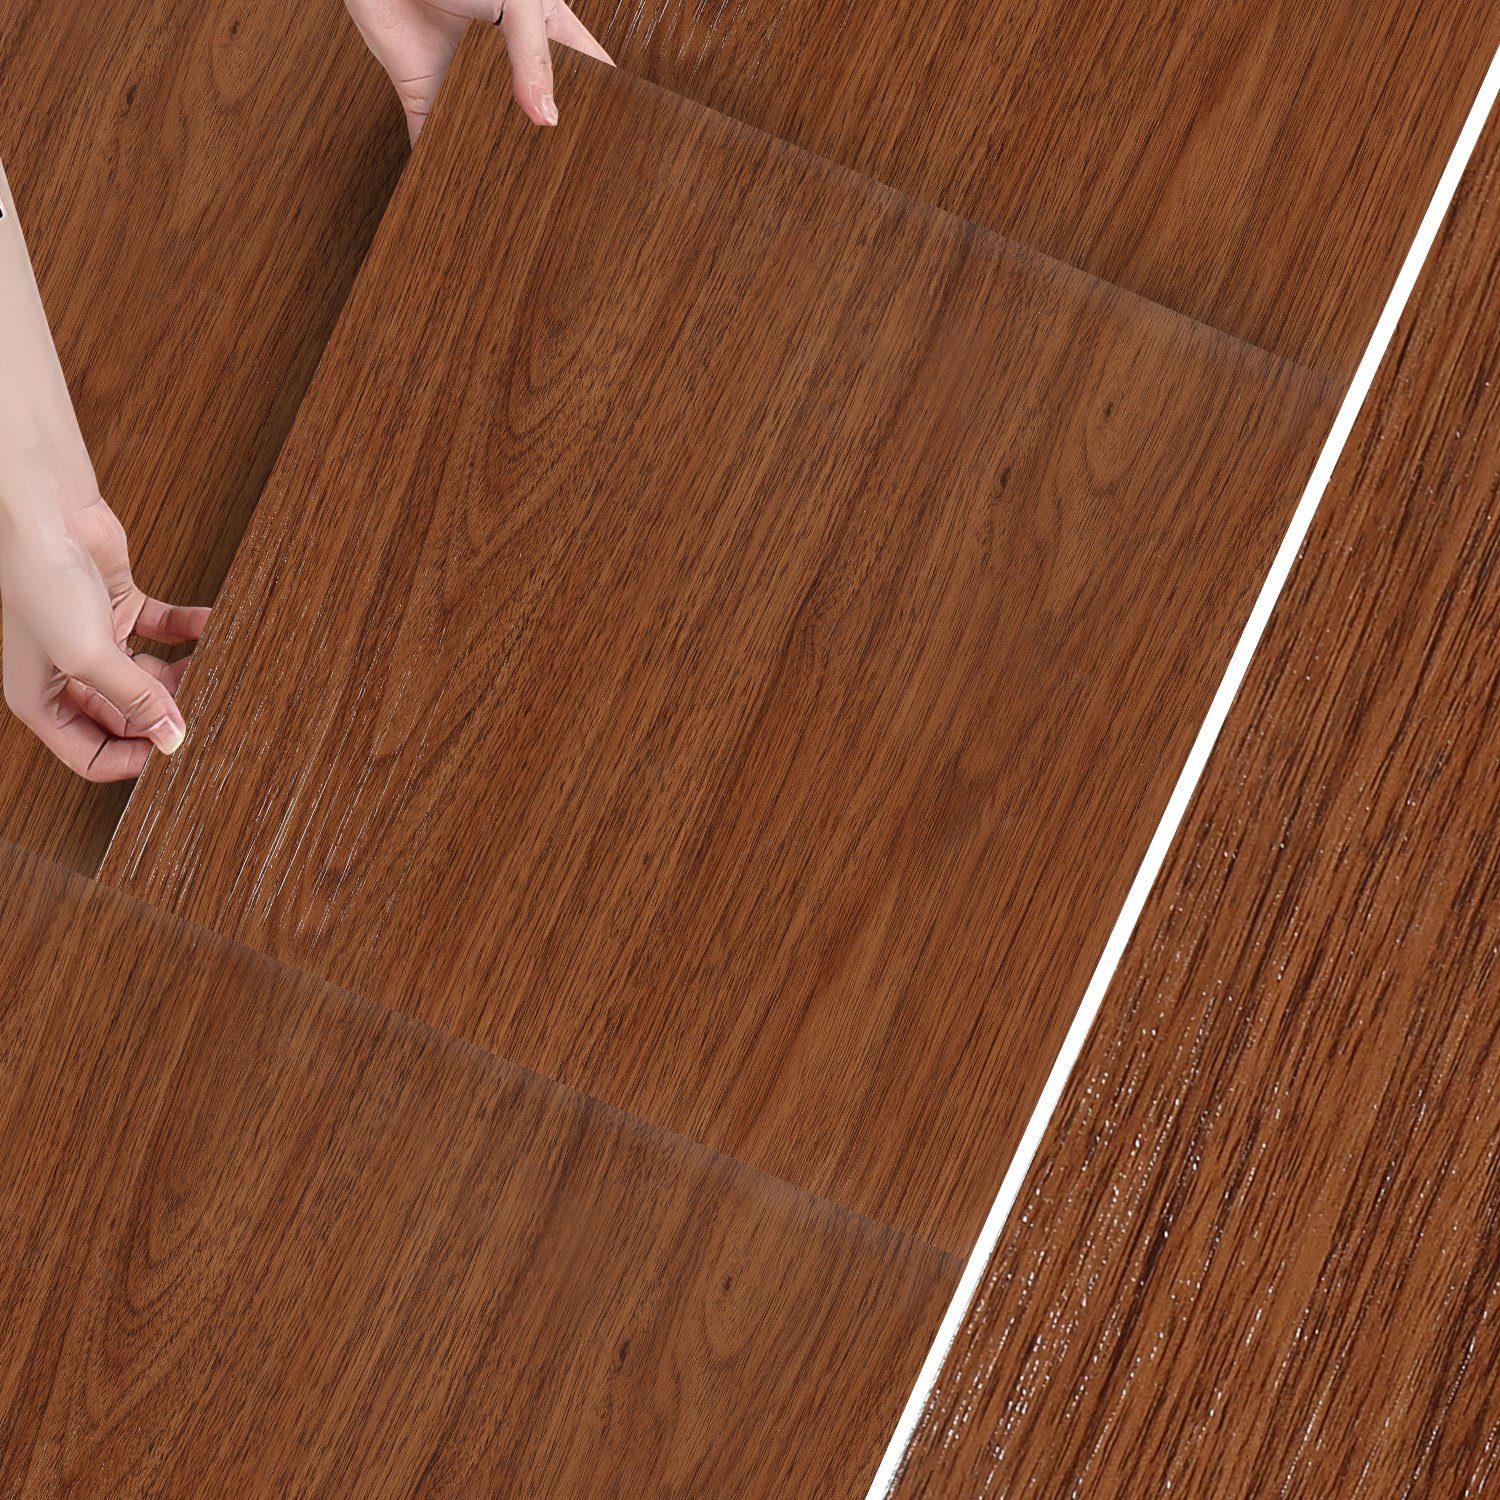 Lospitch Vinylboden Vinylboden Vinyl Laminat Fußbodenheizung Selbstklebend, Holzfarbe Dekor-Dielen Bodenbelag geeignet,schallhemmend